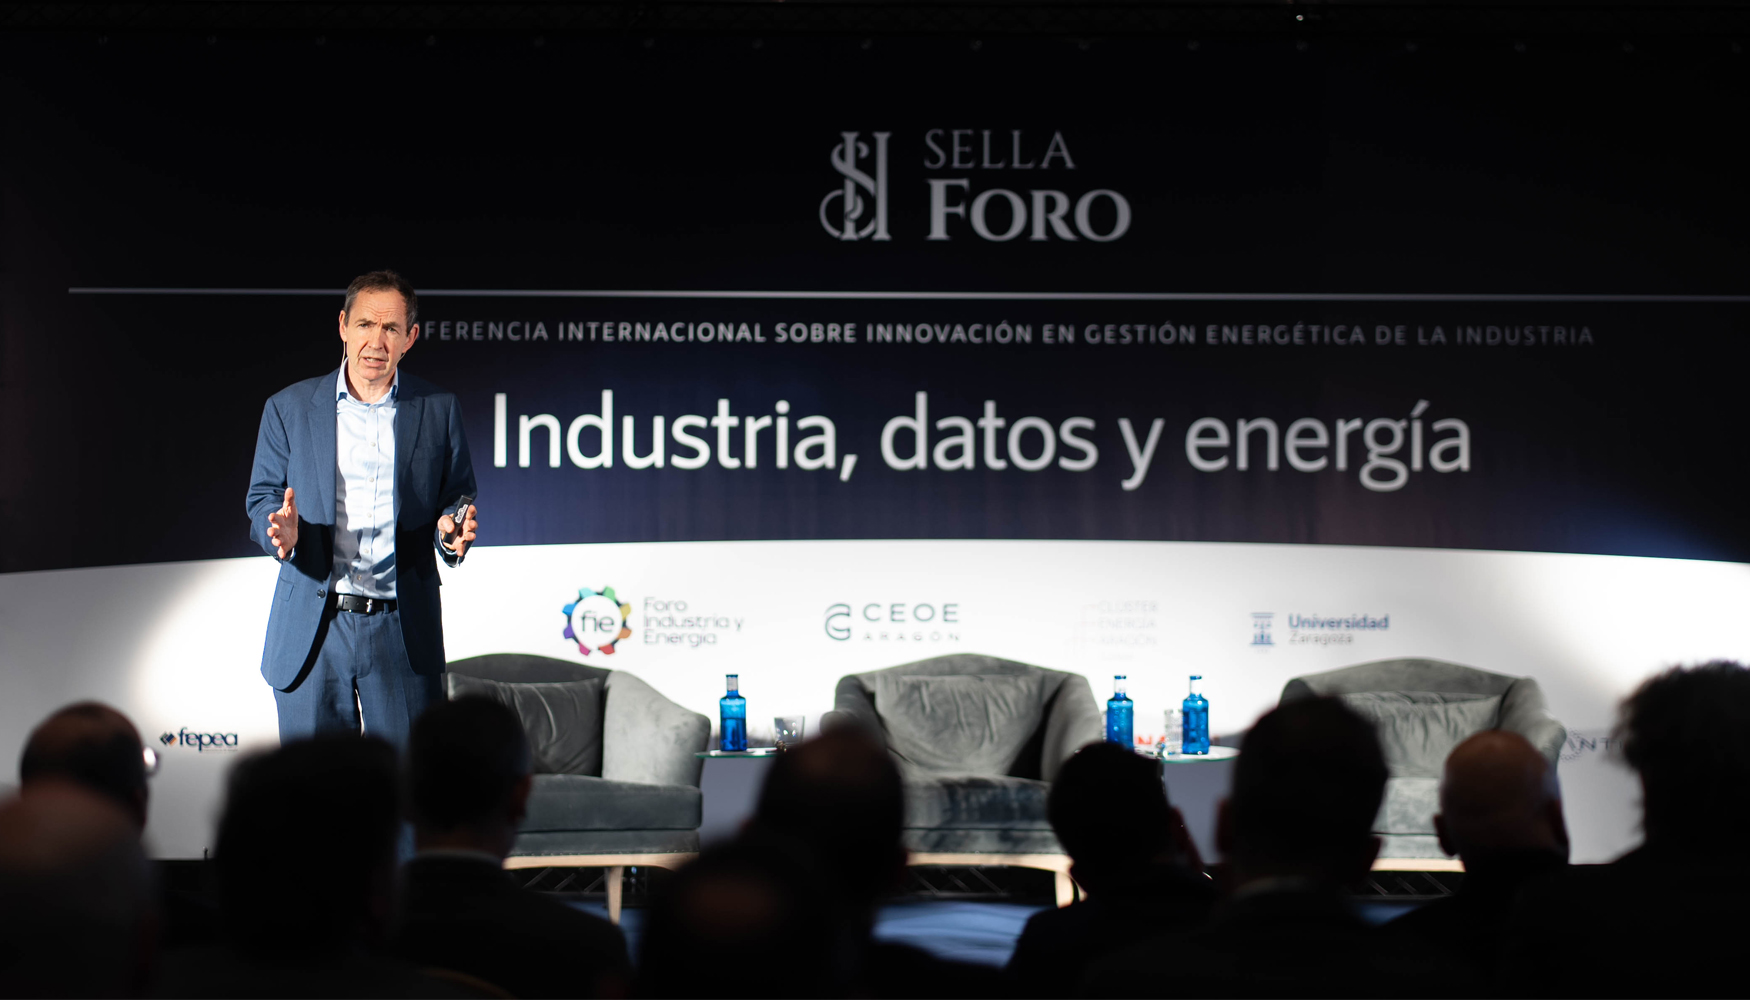 Picture of Foro Sella: El cambio de modelo energtico es una gran oportunidad para impulsar el tejido industrial y econmico